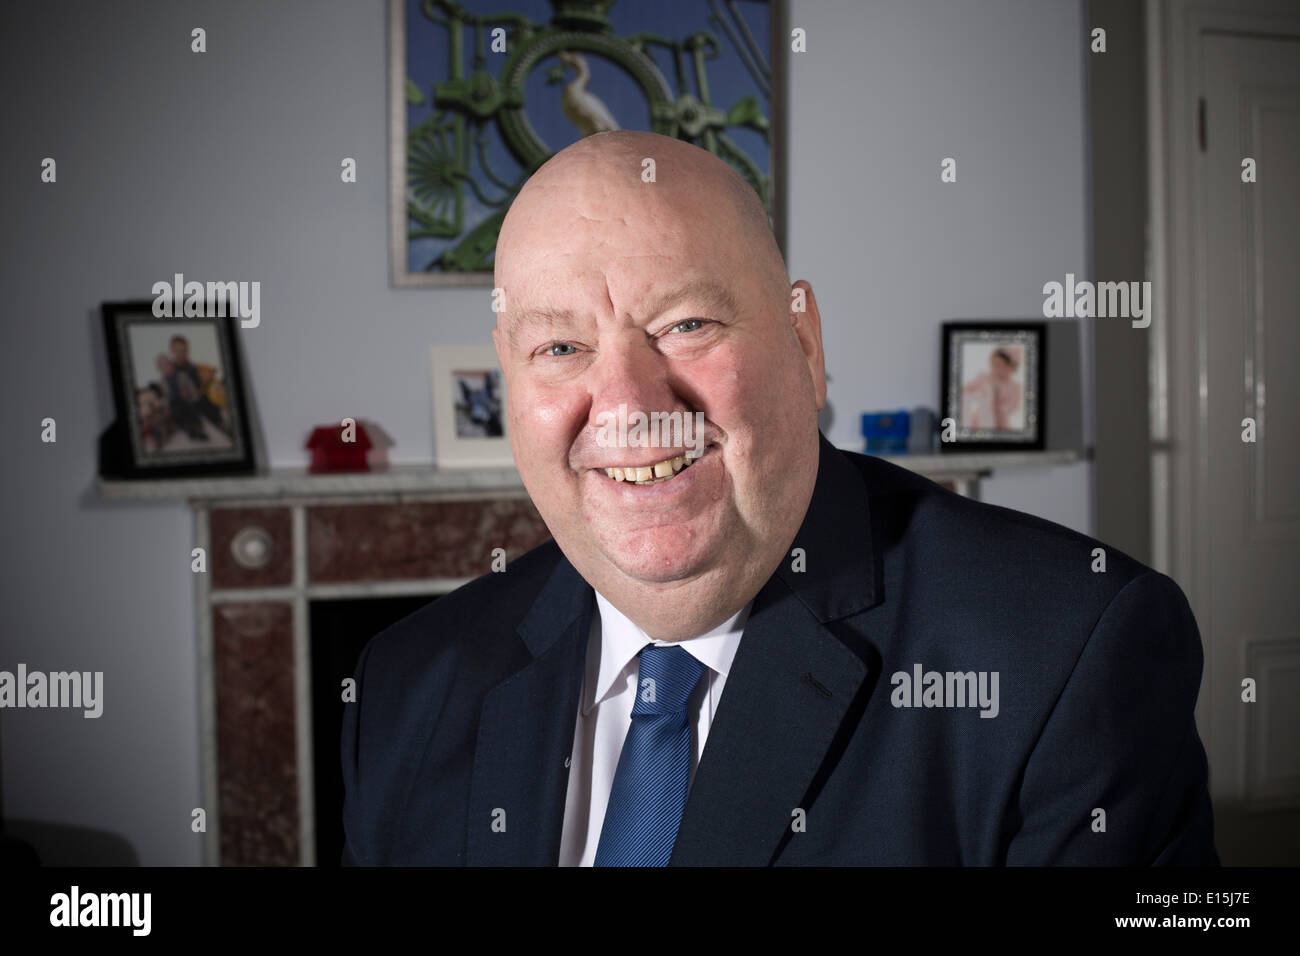 El alcalde de la ciudad de Liverpool, Joe Anderson, retratada en su oficina en los edificios municipales de la ciudad. Foto de stock